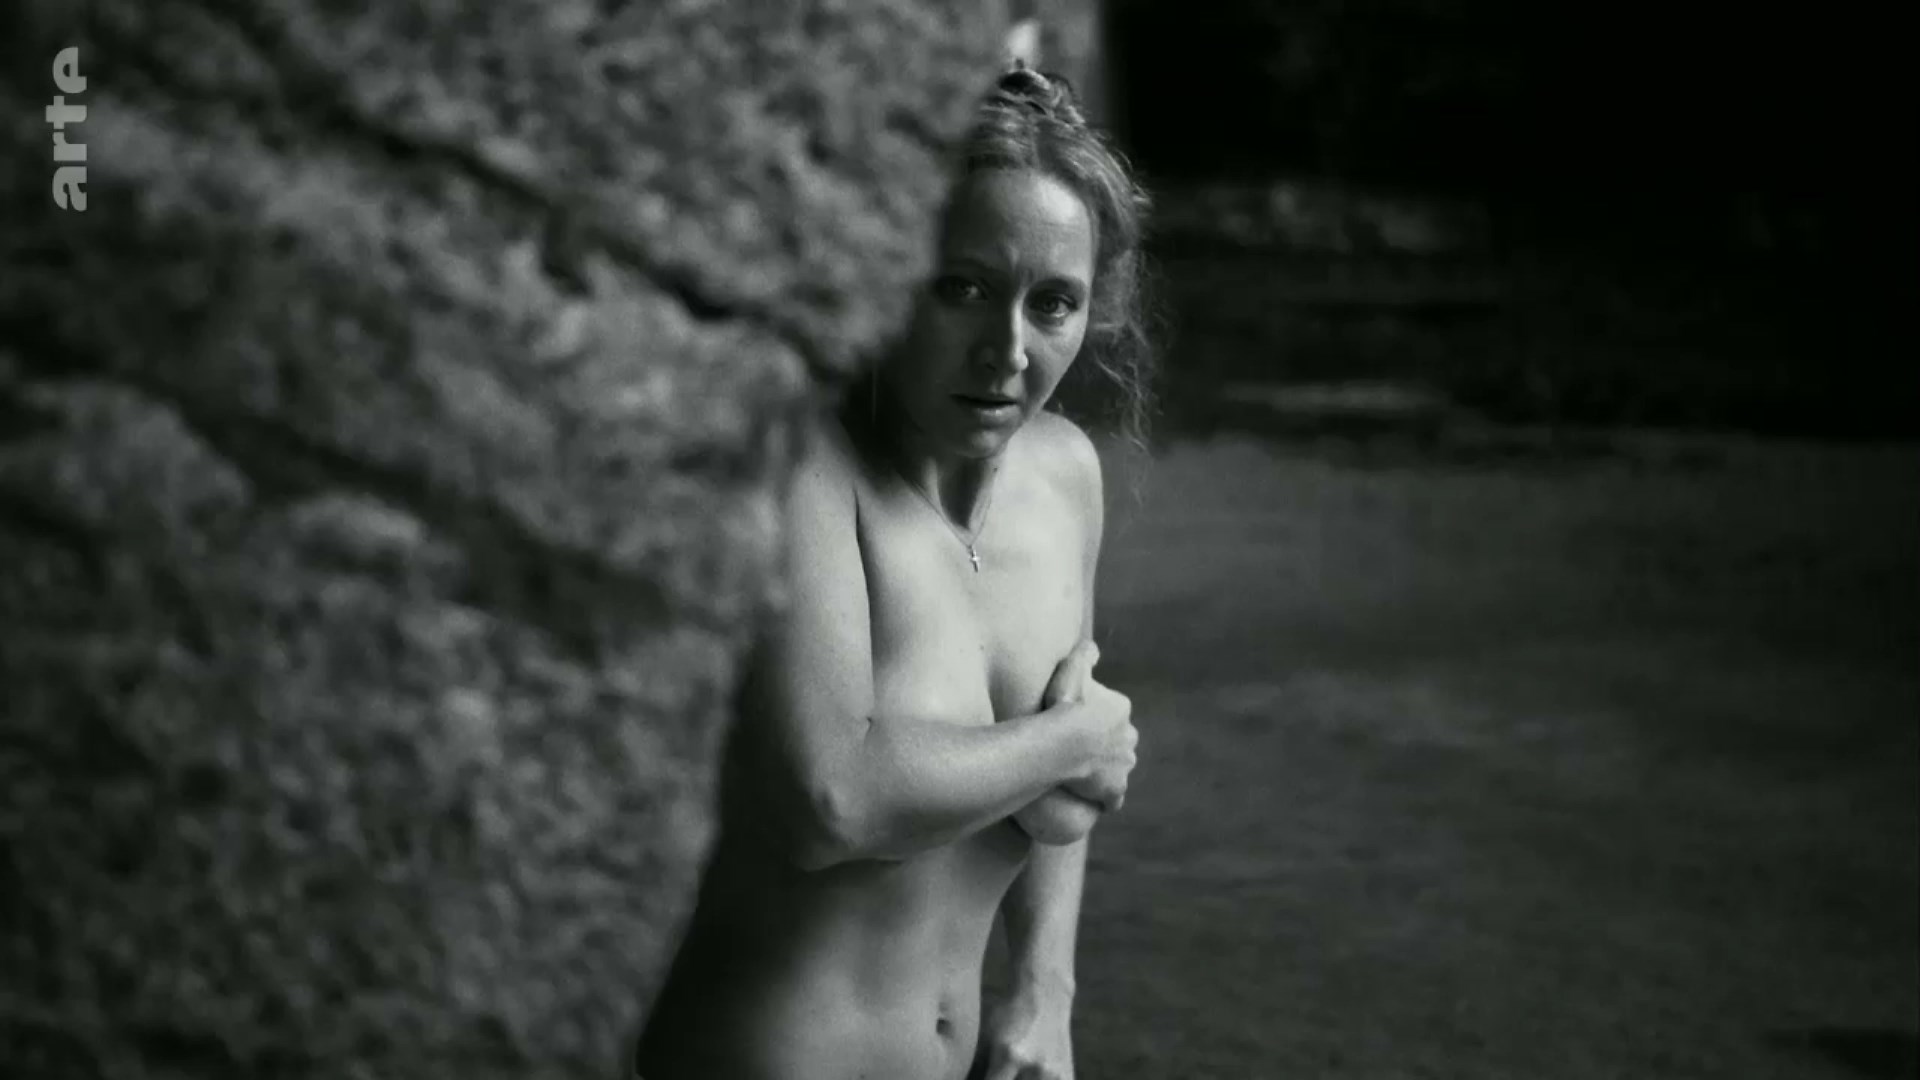 Nude Video Celebs Valerie Pachner Nude Die Neue Zeit S01e01 2019